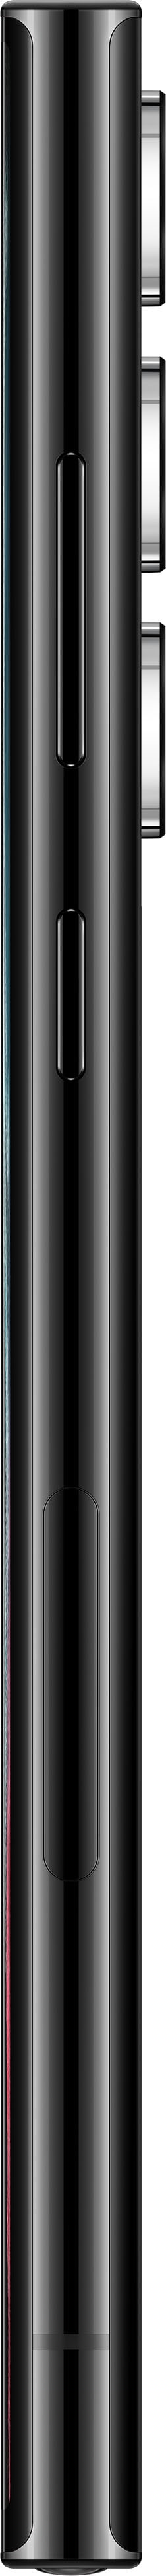 Samsung - Galaxy S22 Ultra 128GB - Phantom Black (Verizon)_5